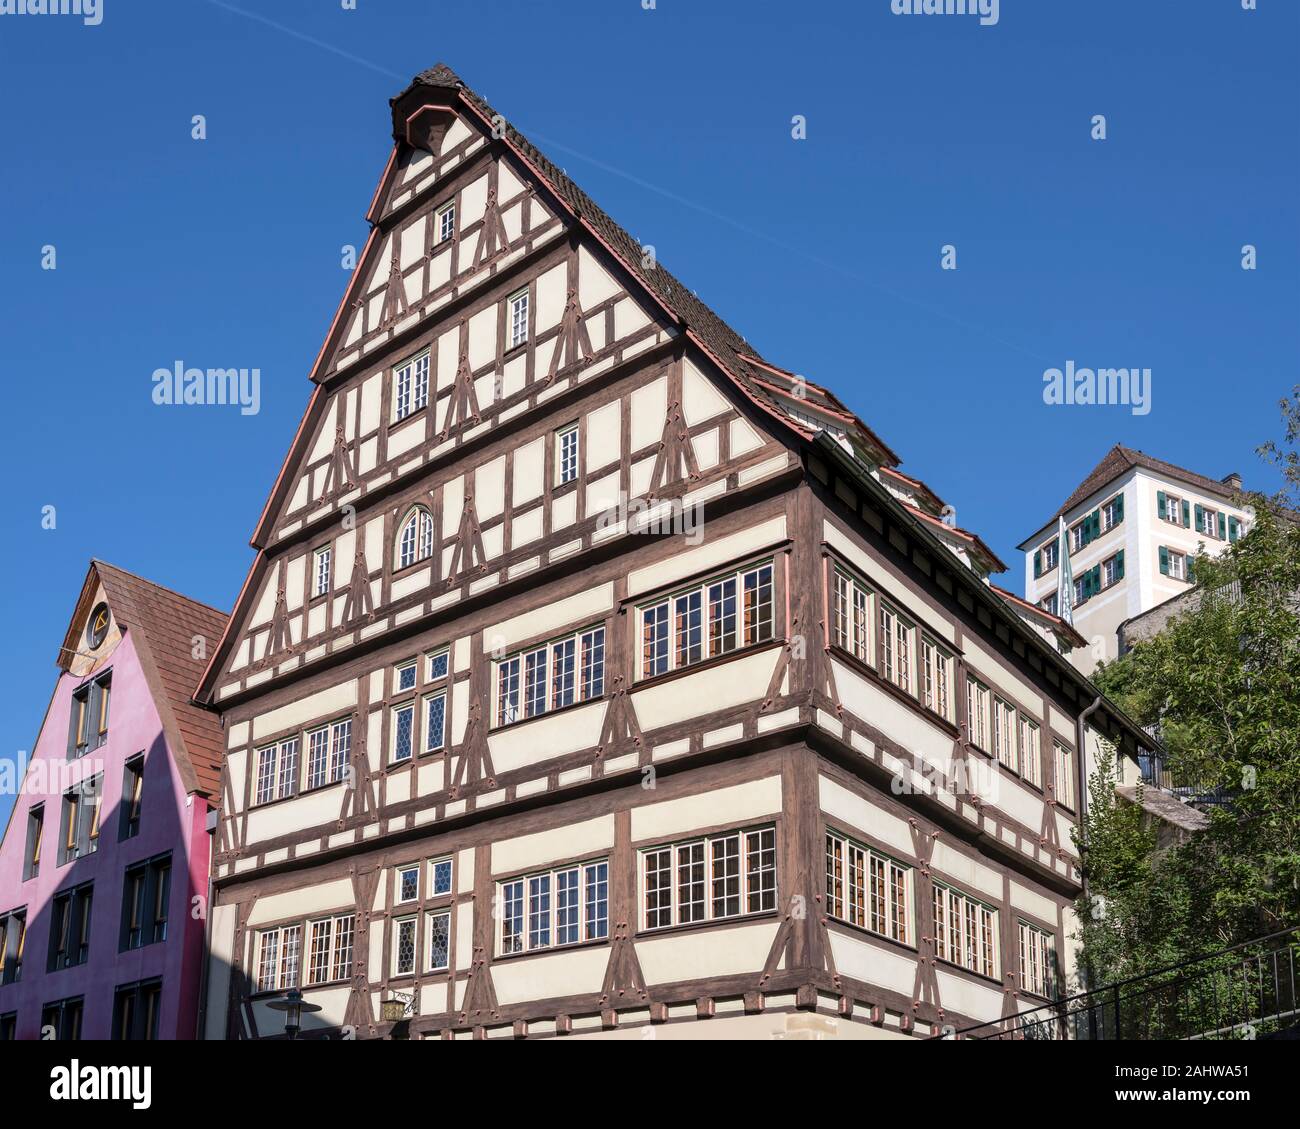 Traditionelle malerischen wattle House bei touristischen historische Städtchen, im Sommer Schuss helles Licht in Horb am Neckar, Baden Wuttenberg, Deutschland Stockfoto